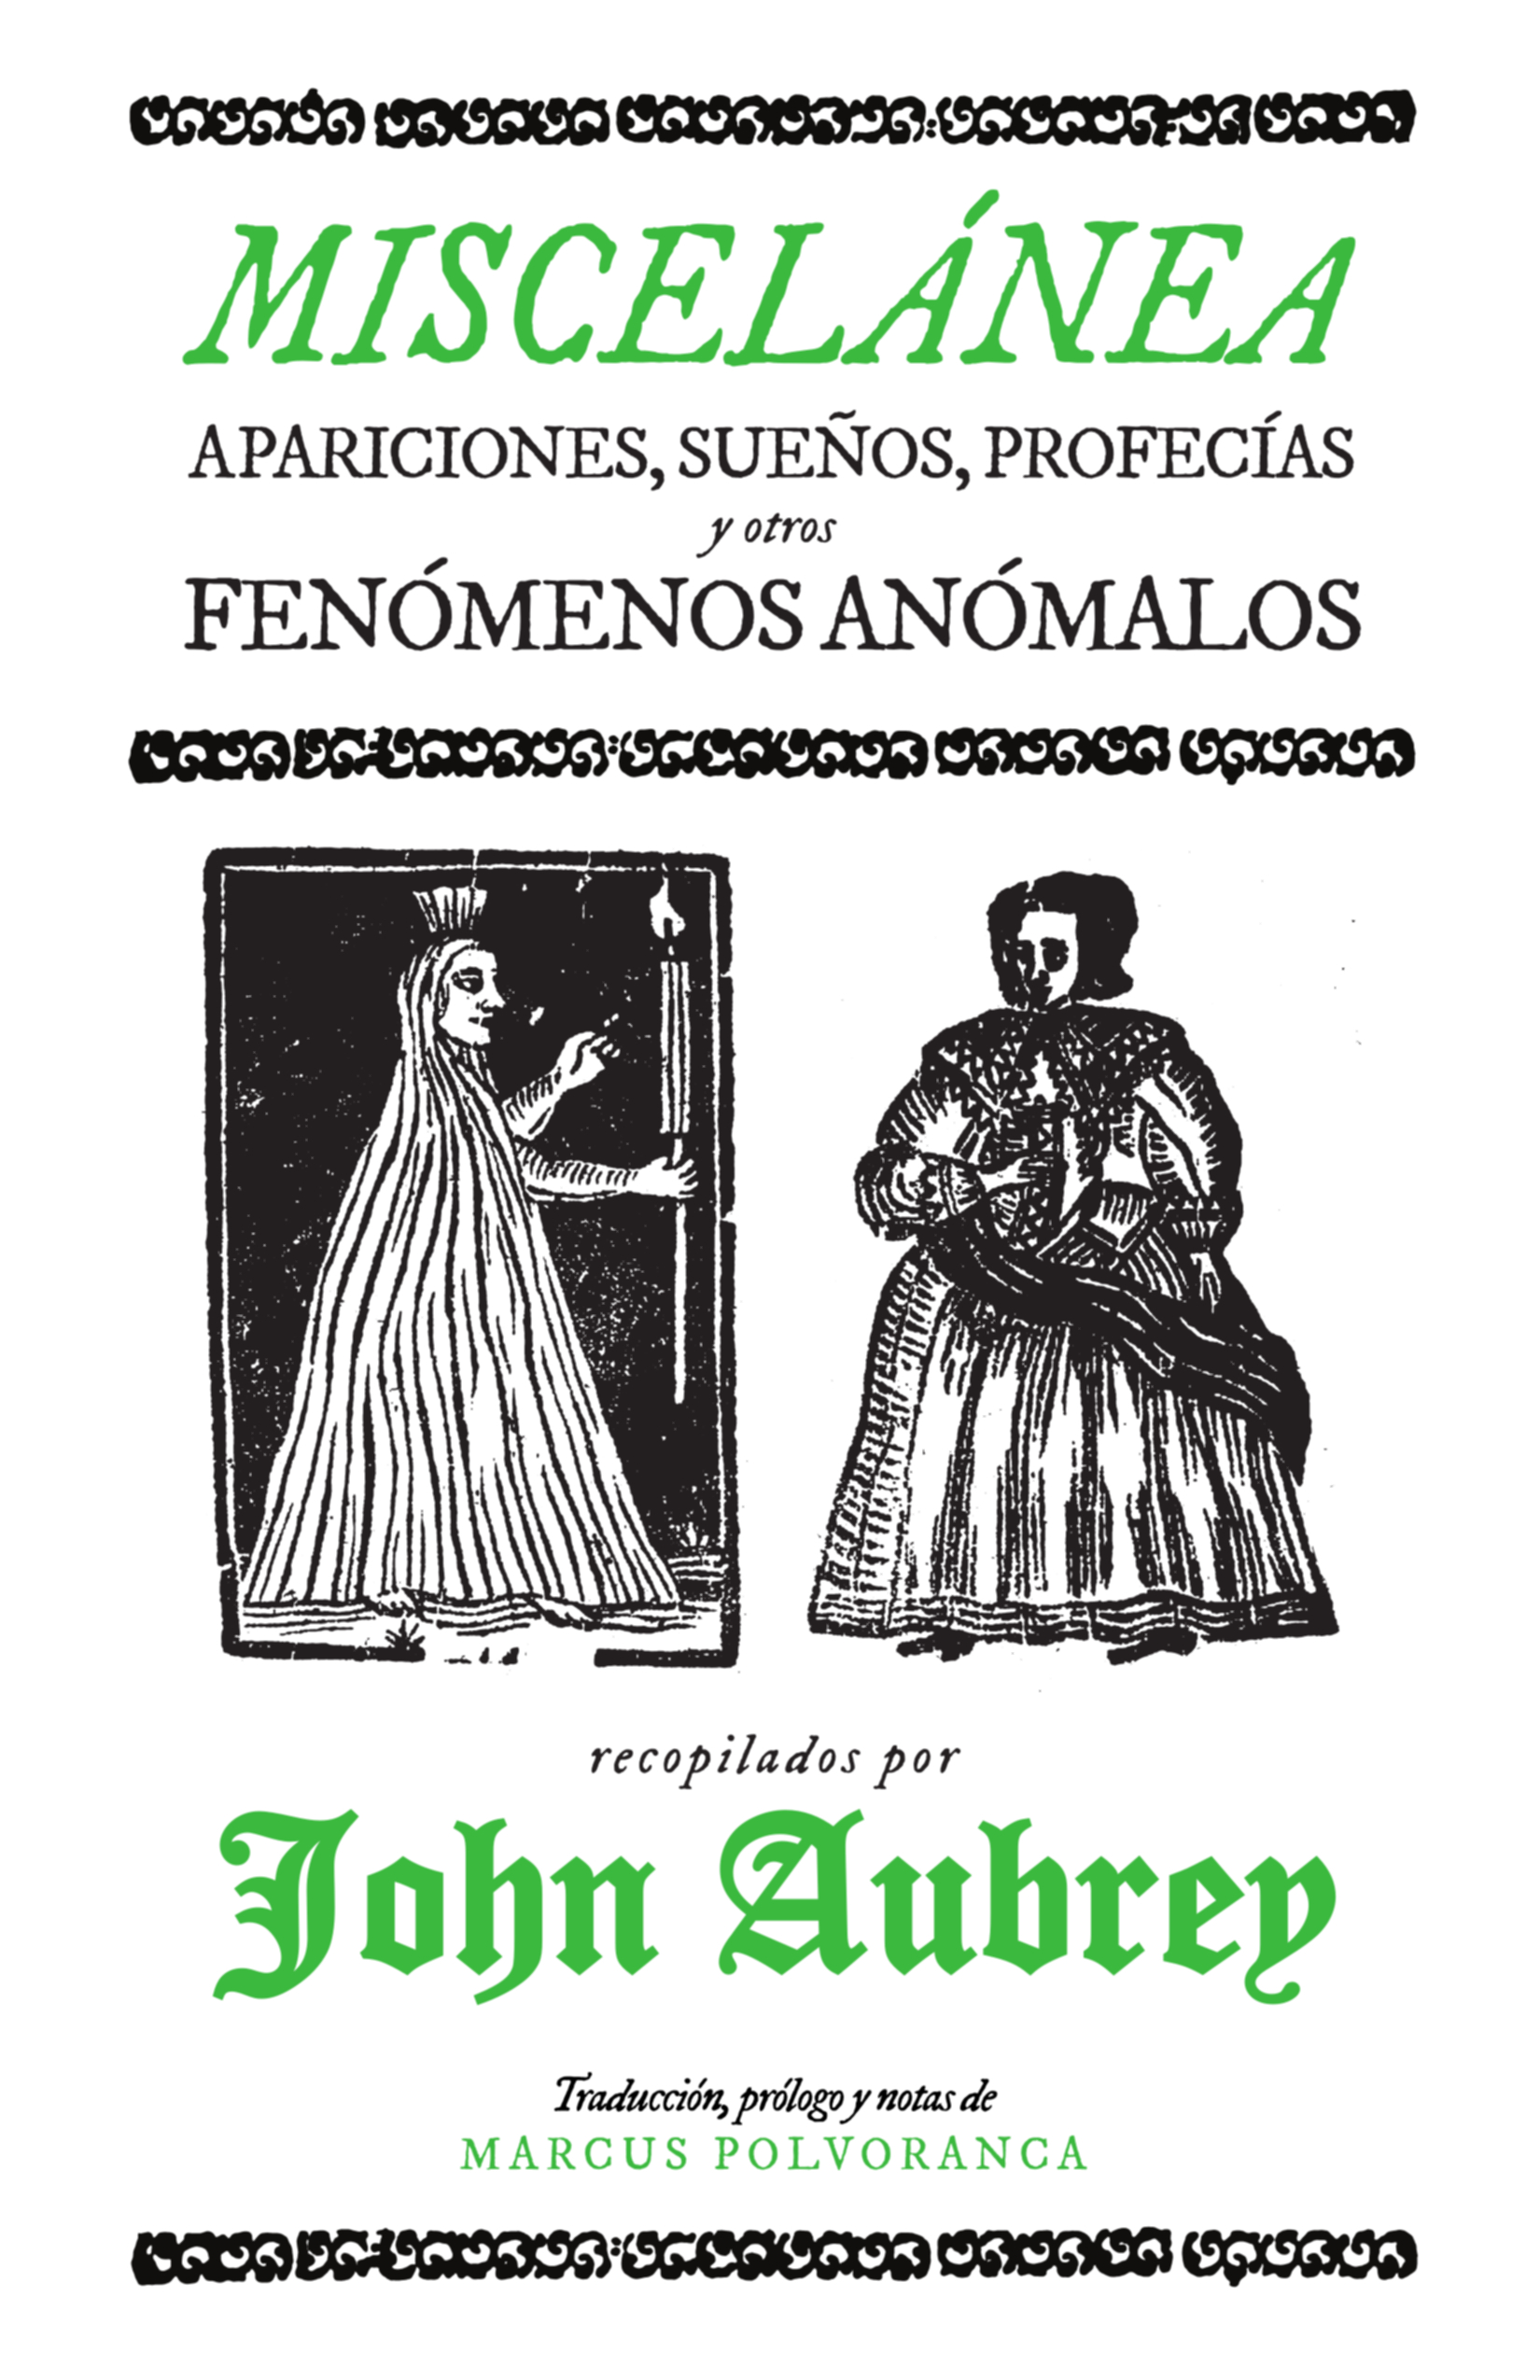 Miscelánea: apariciones, sueños, profecías y otros fenómenos anómalos, de John Aubrey